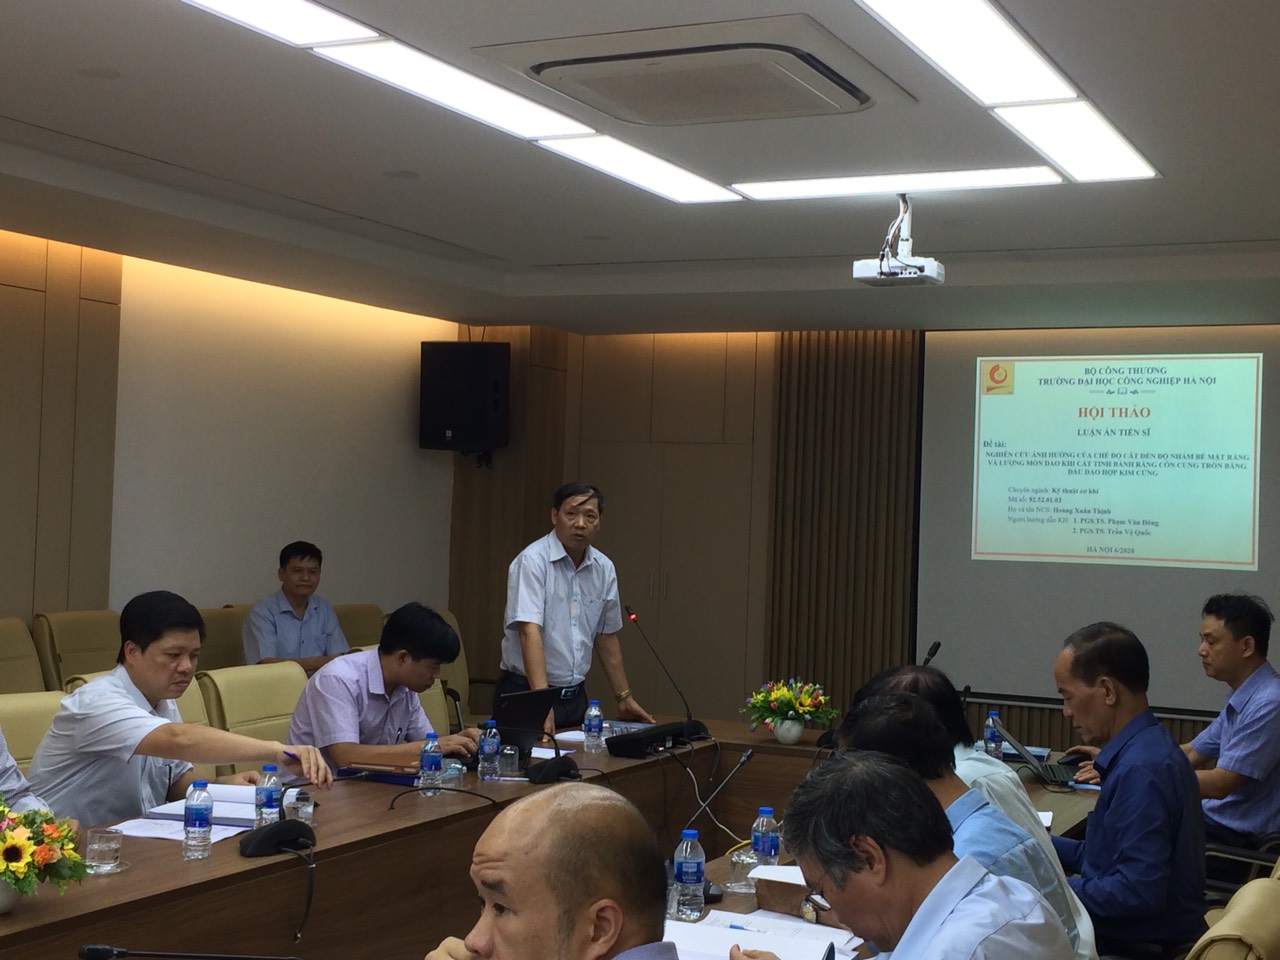 Tổ chức Hội thảo luận án tiến sĩ cho NCS Hoàng Xuân Thịnh, chuyên ngành Kỹ thuật cơ khí